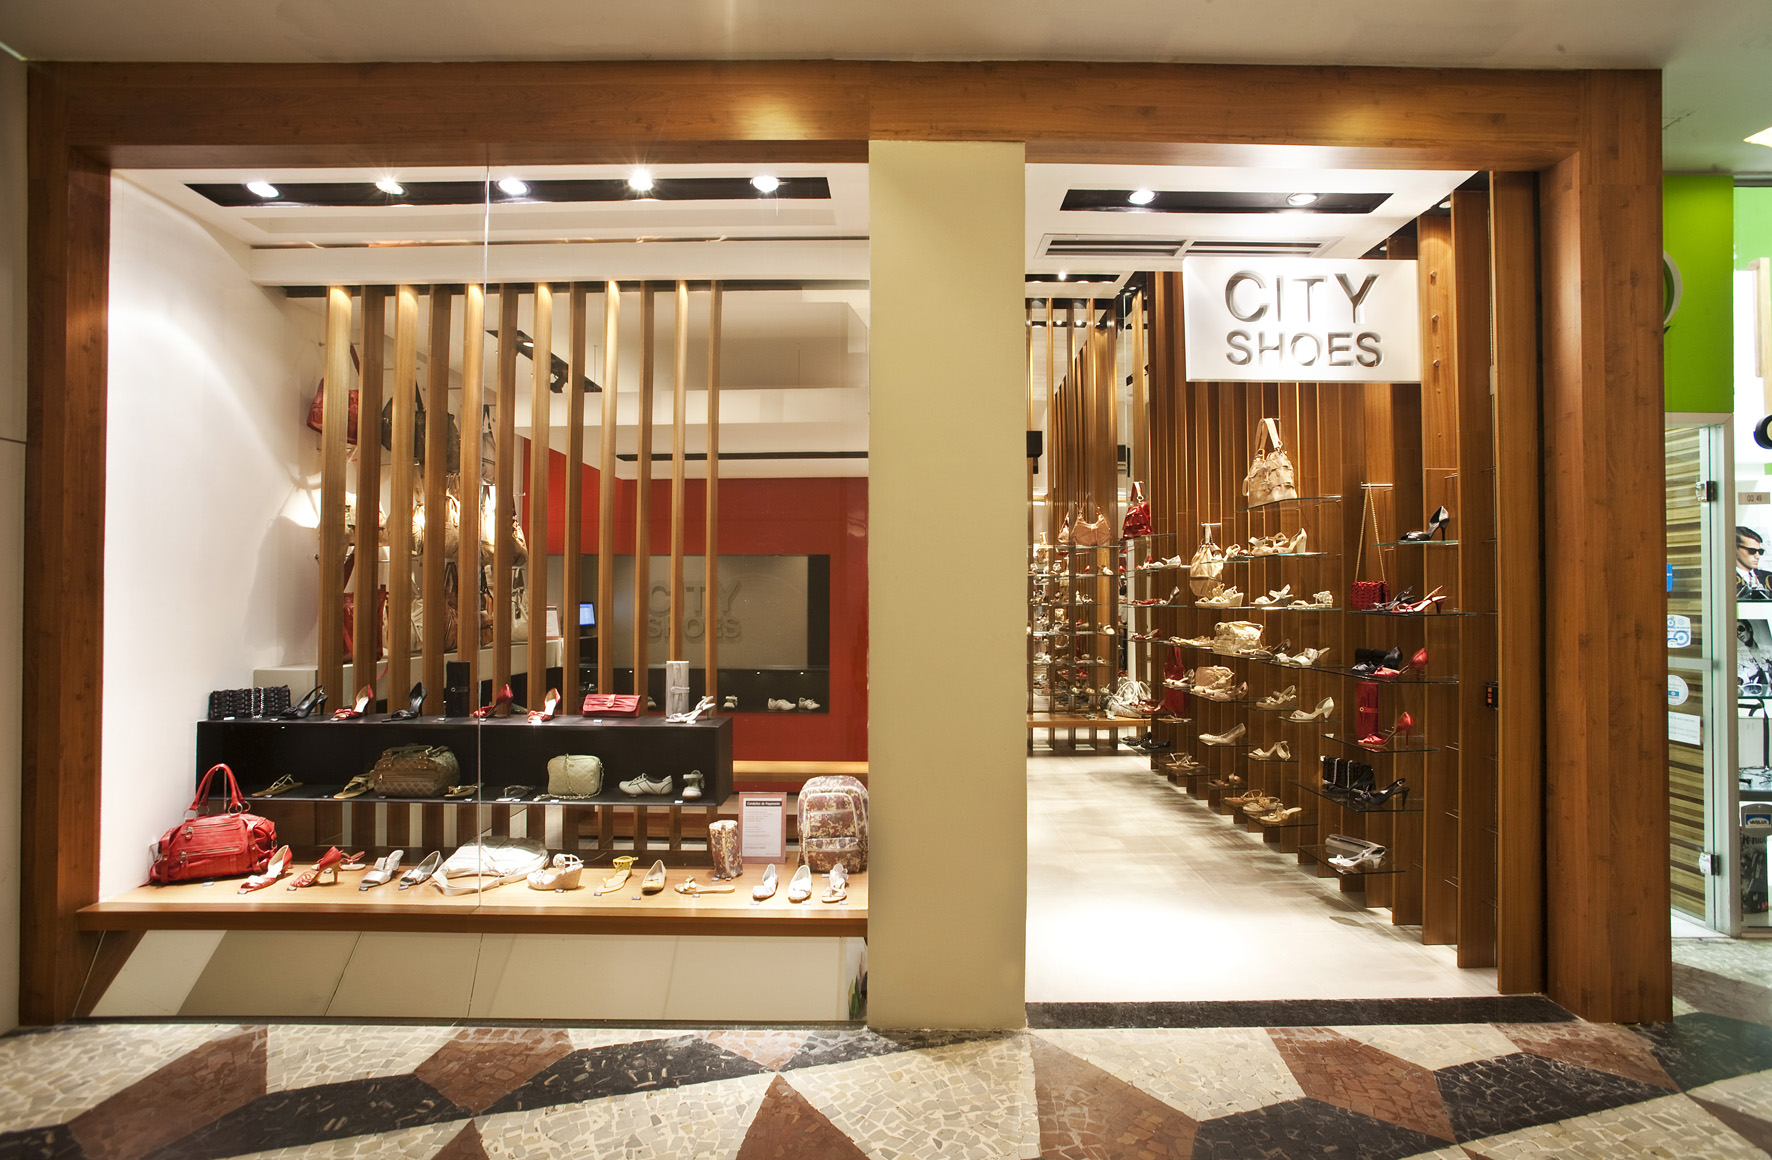 City Shoes espera expandir a marca para 400 lojas nos prximos sete anos